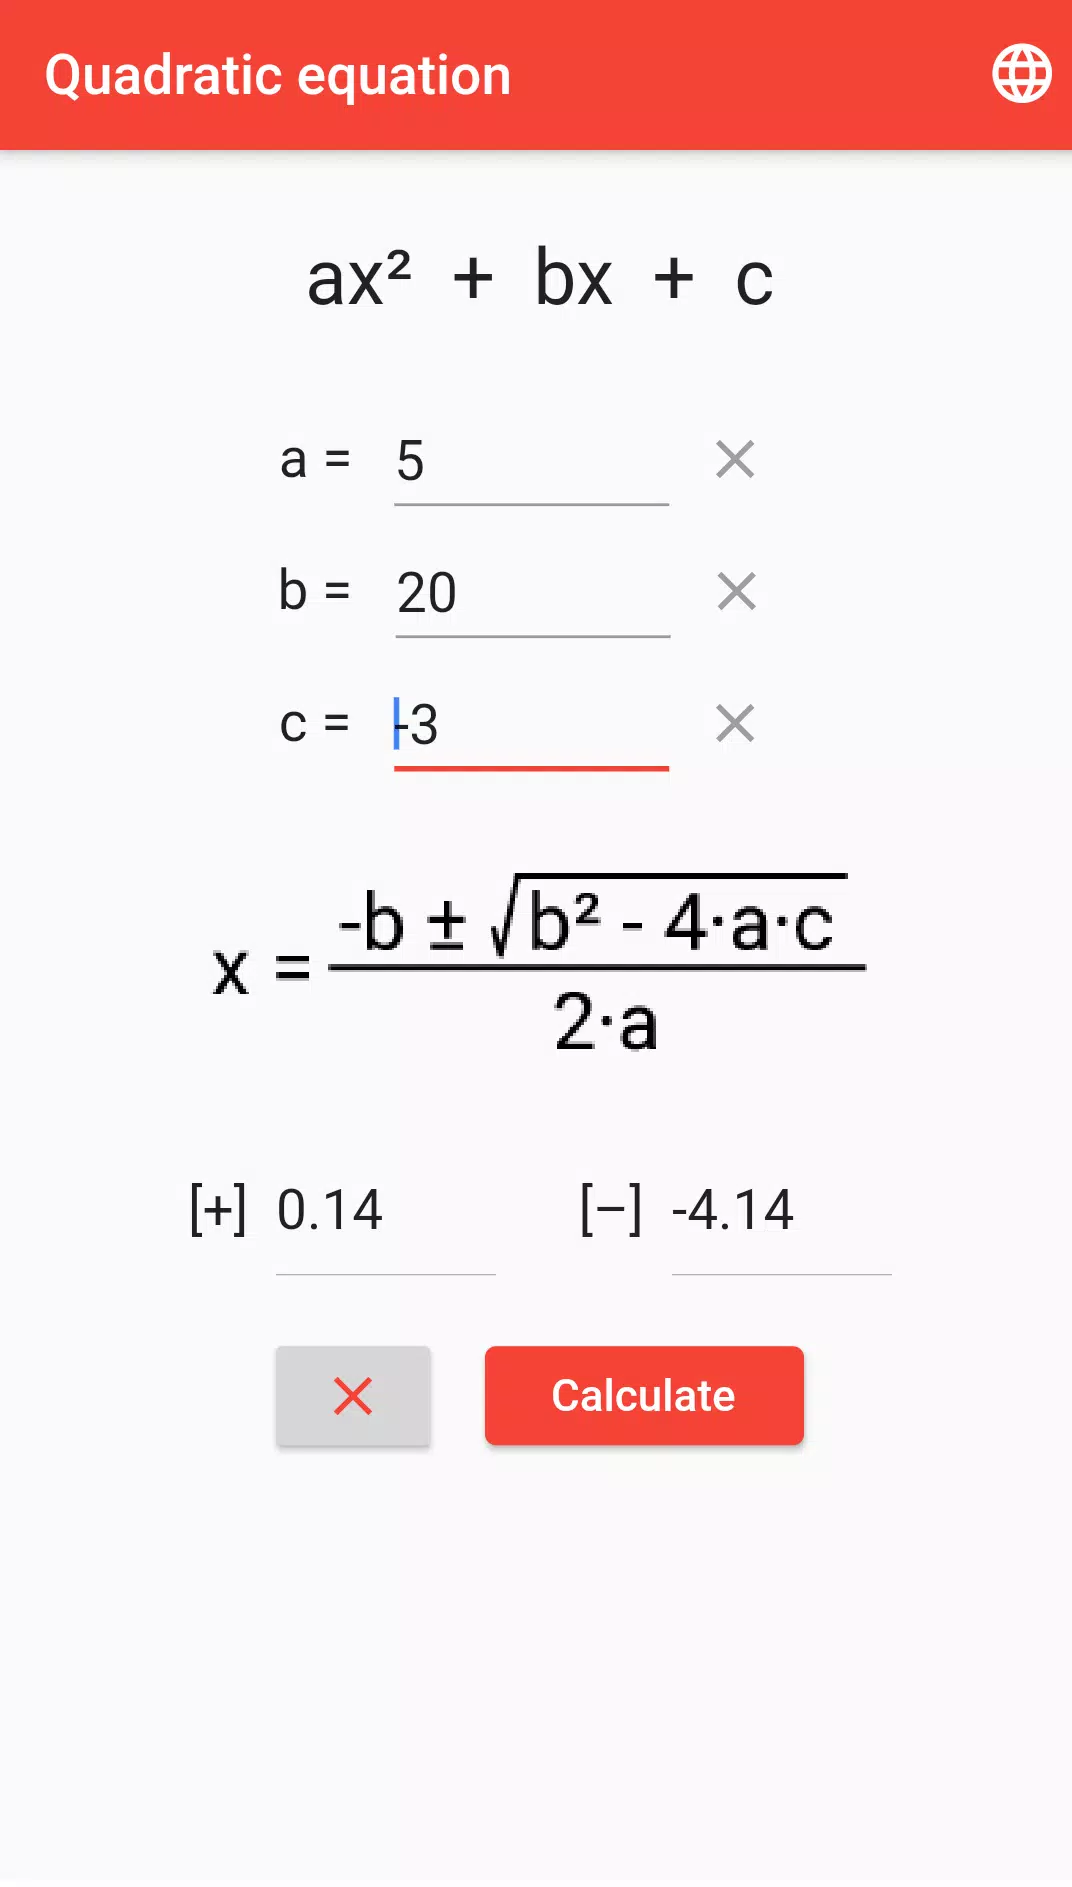 Calculadora de Equação do Segundo Grau